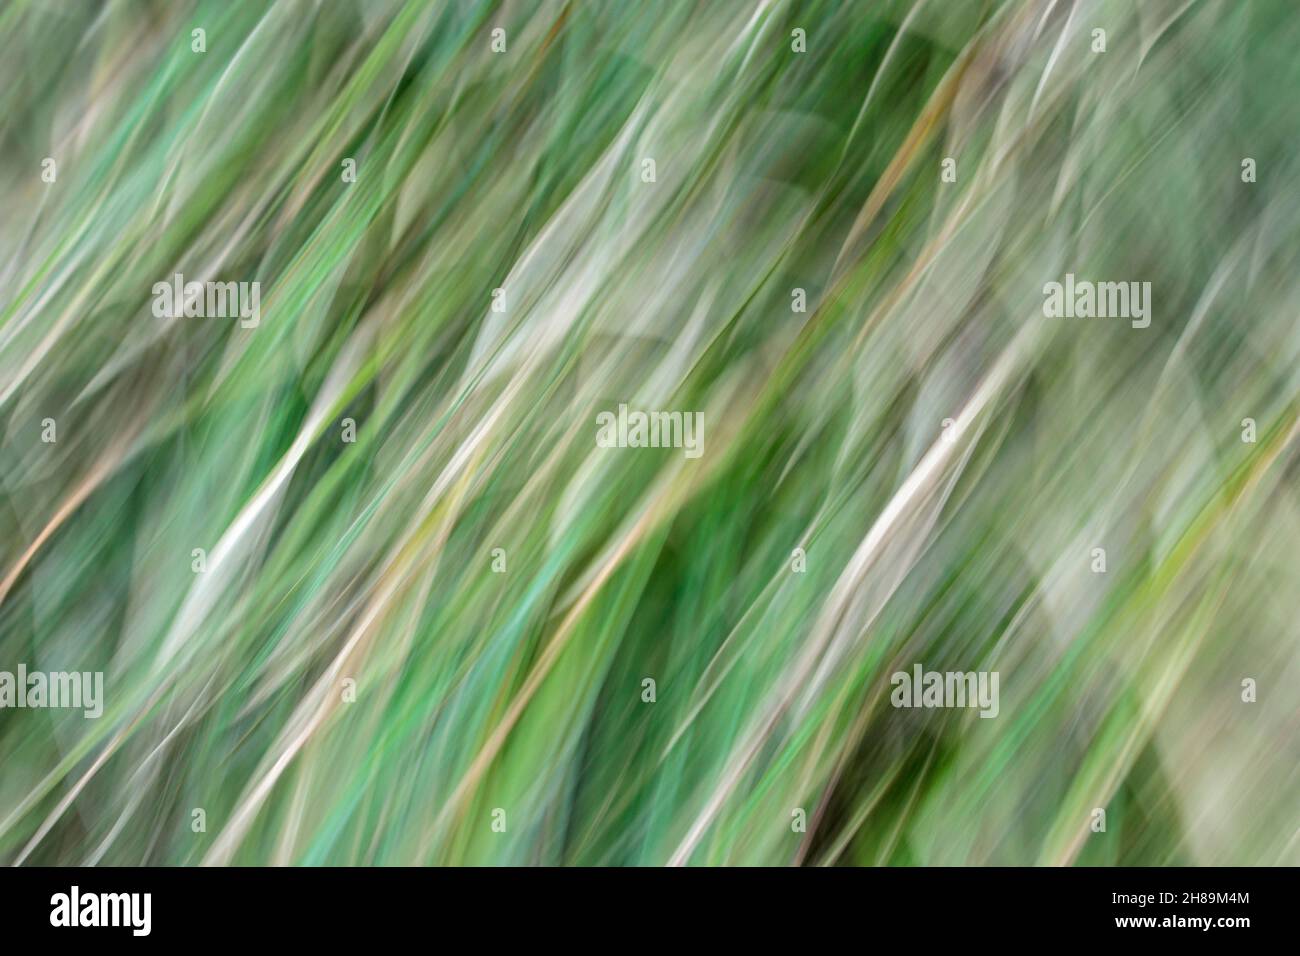 Movimiento suave abstracto borroso con líneas de alisos diagonales, sinuosas de color amarillo en medio de los tonos verdes de un abeto (movimiento intencional de la cámara). Foto de stock